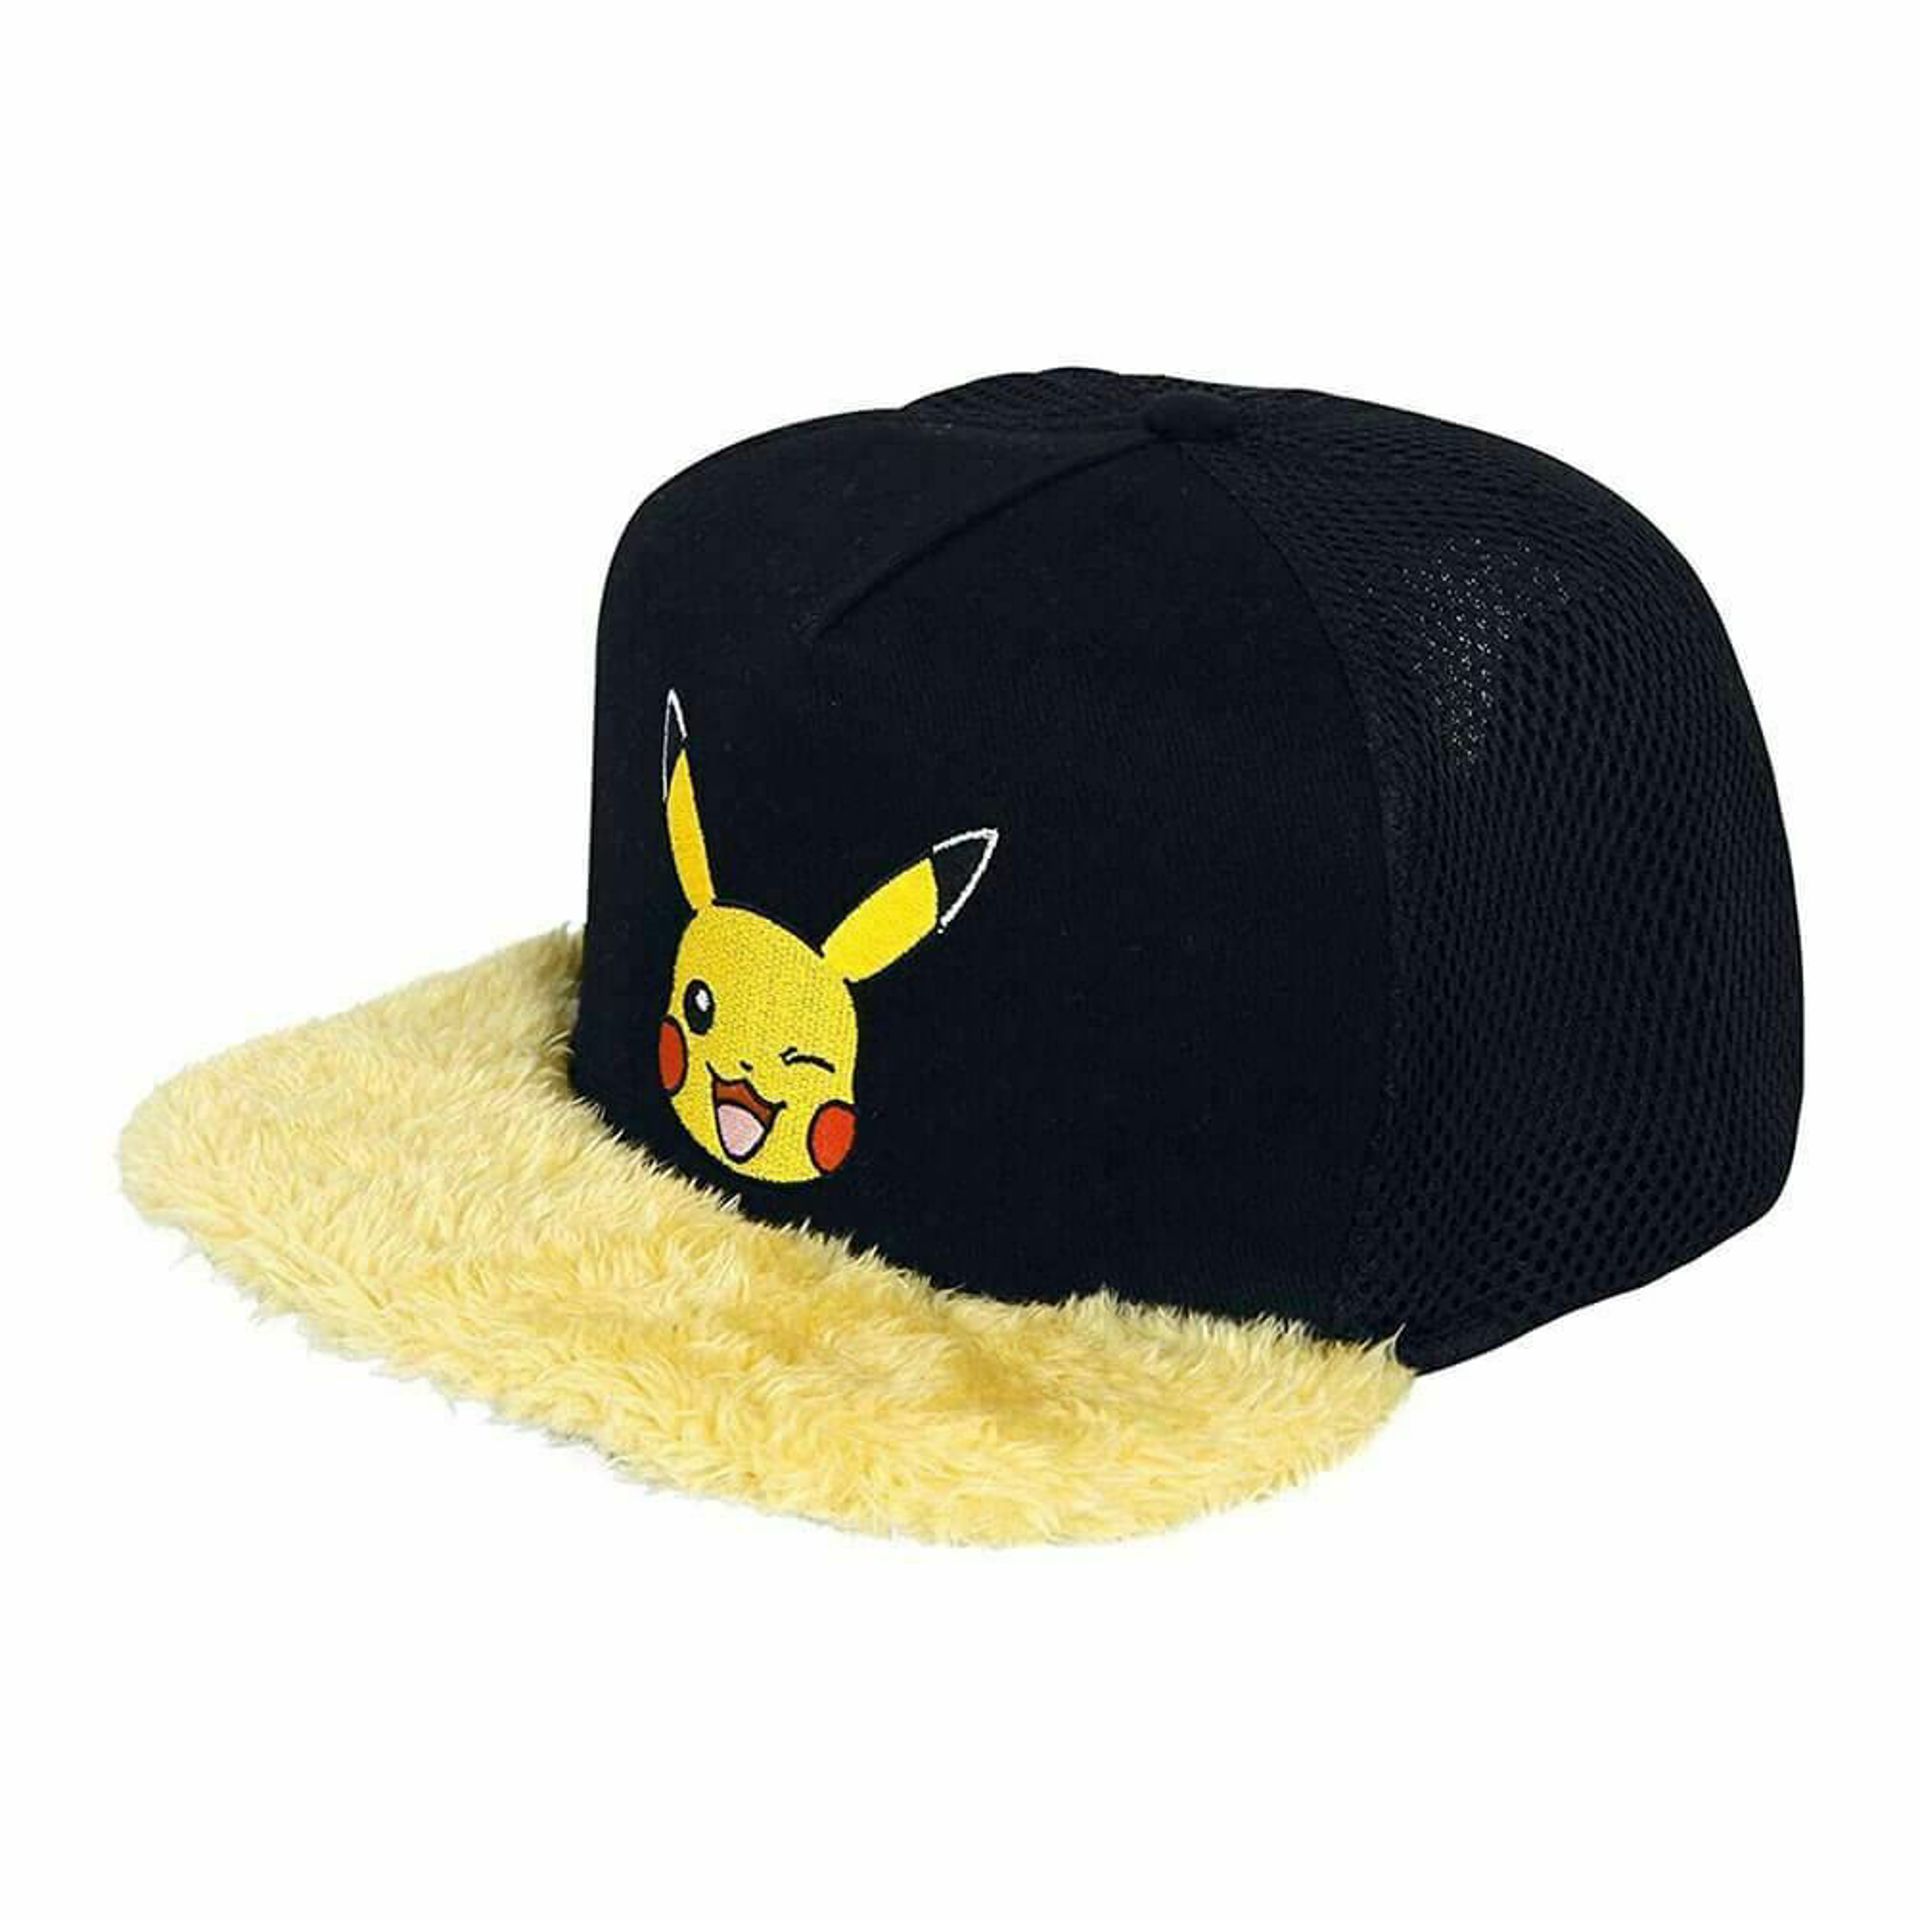 Nintendo - Casquette Noire et Jaune Pokémon Pikachu